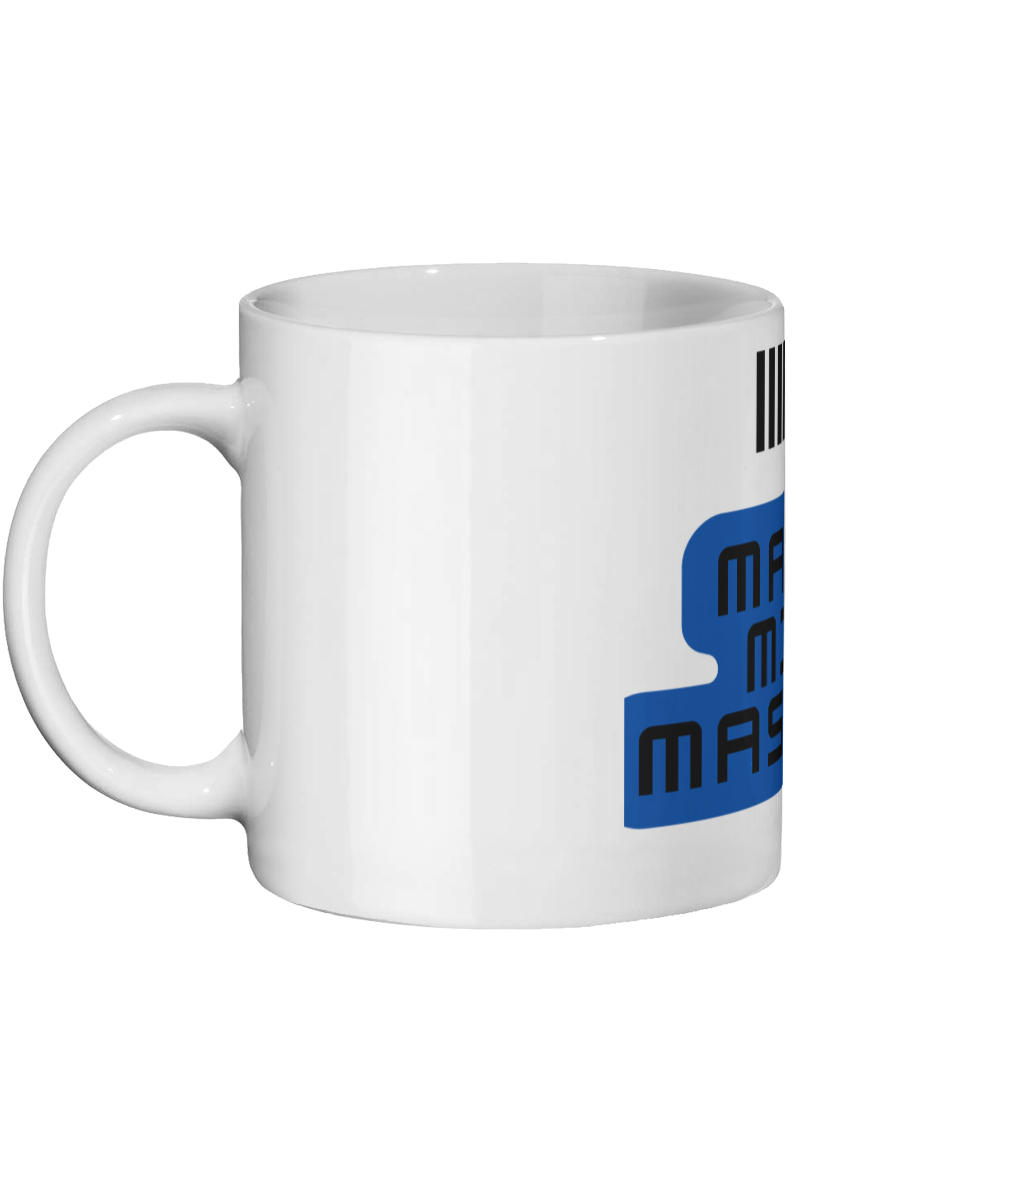 Make Mix Master Mug